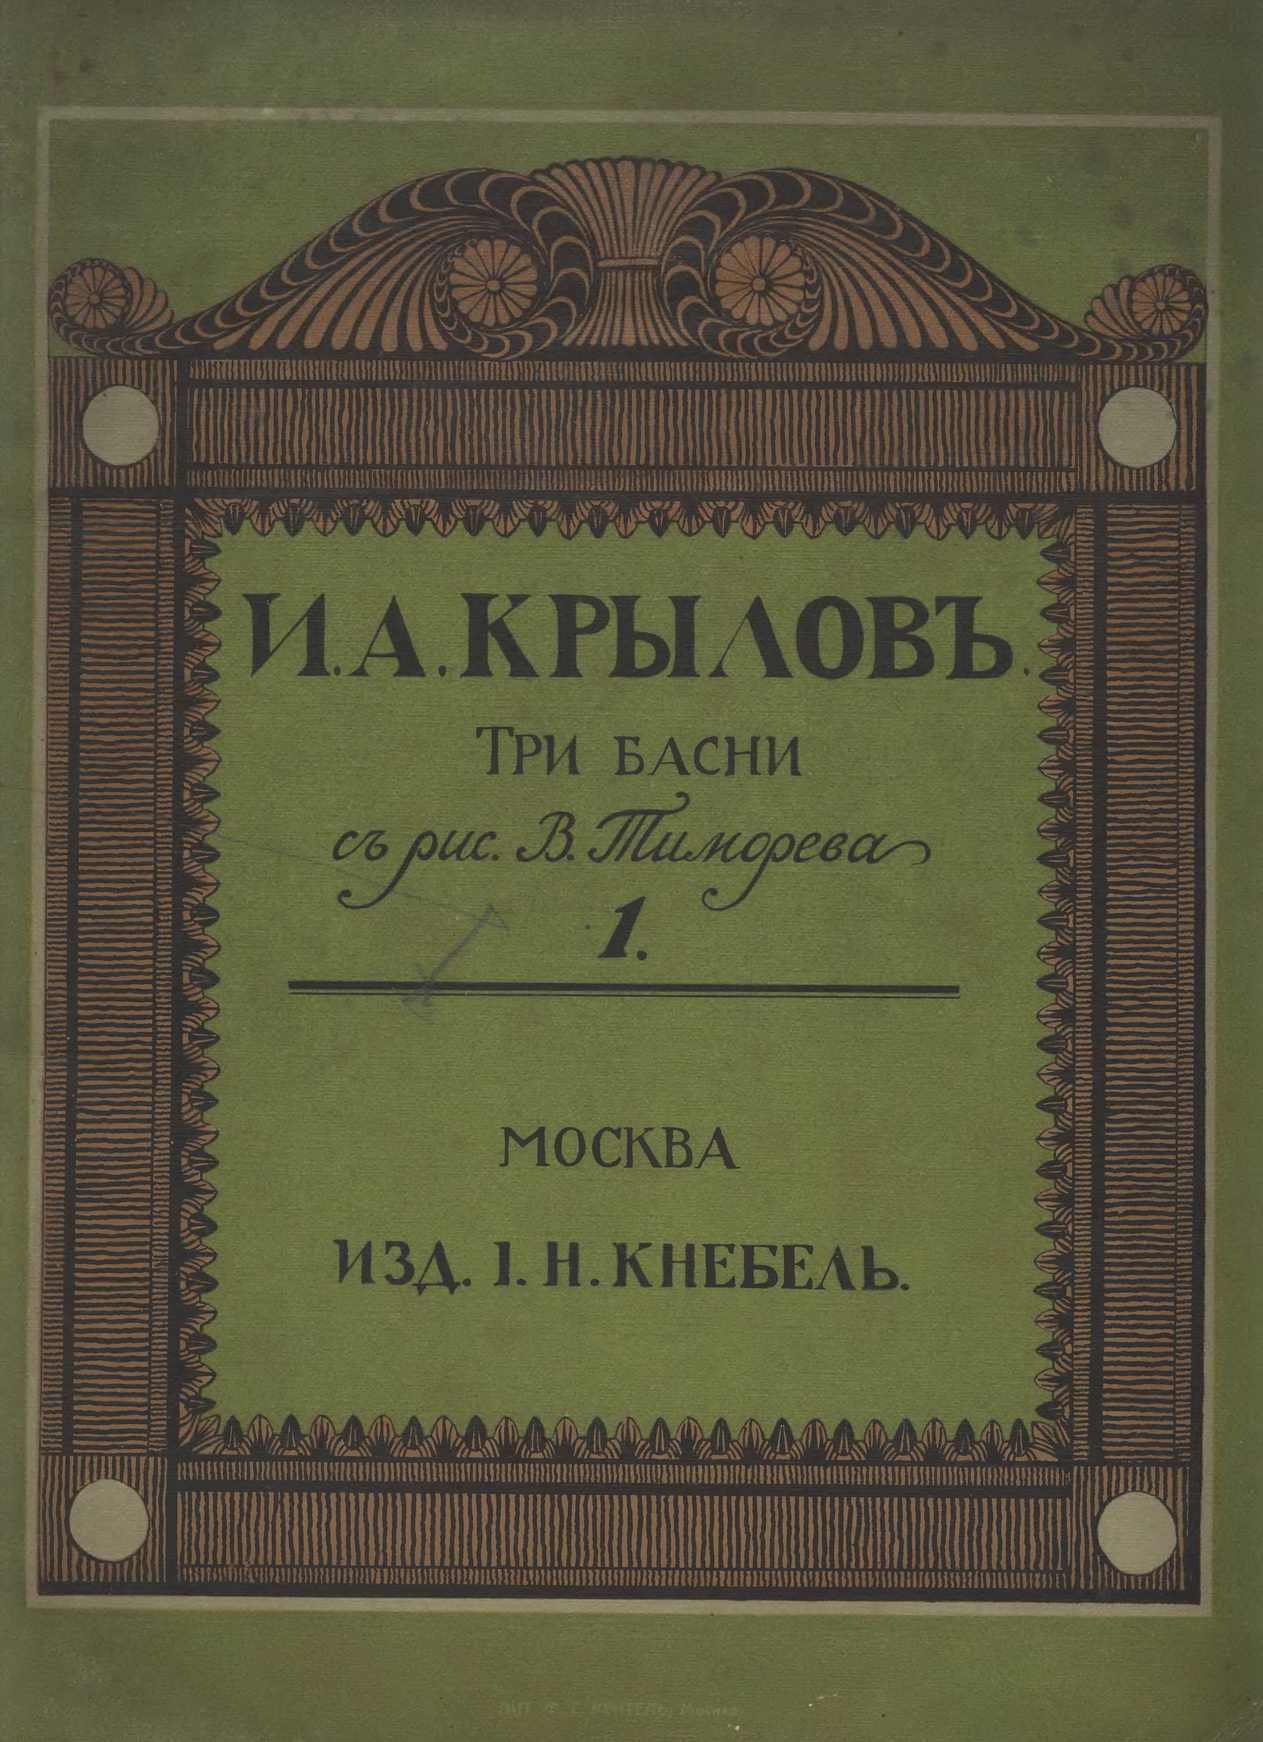 Тиморев В.П. [рис.], Крылов И.А. Три басни, изд. Кнебеля, 1913. С.01.jpg